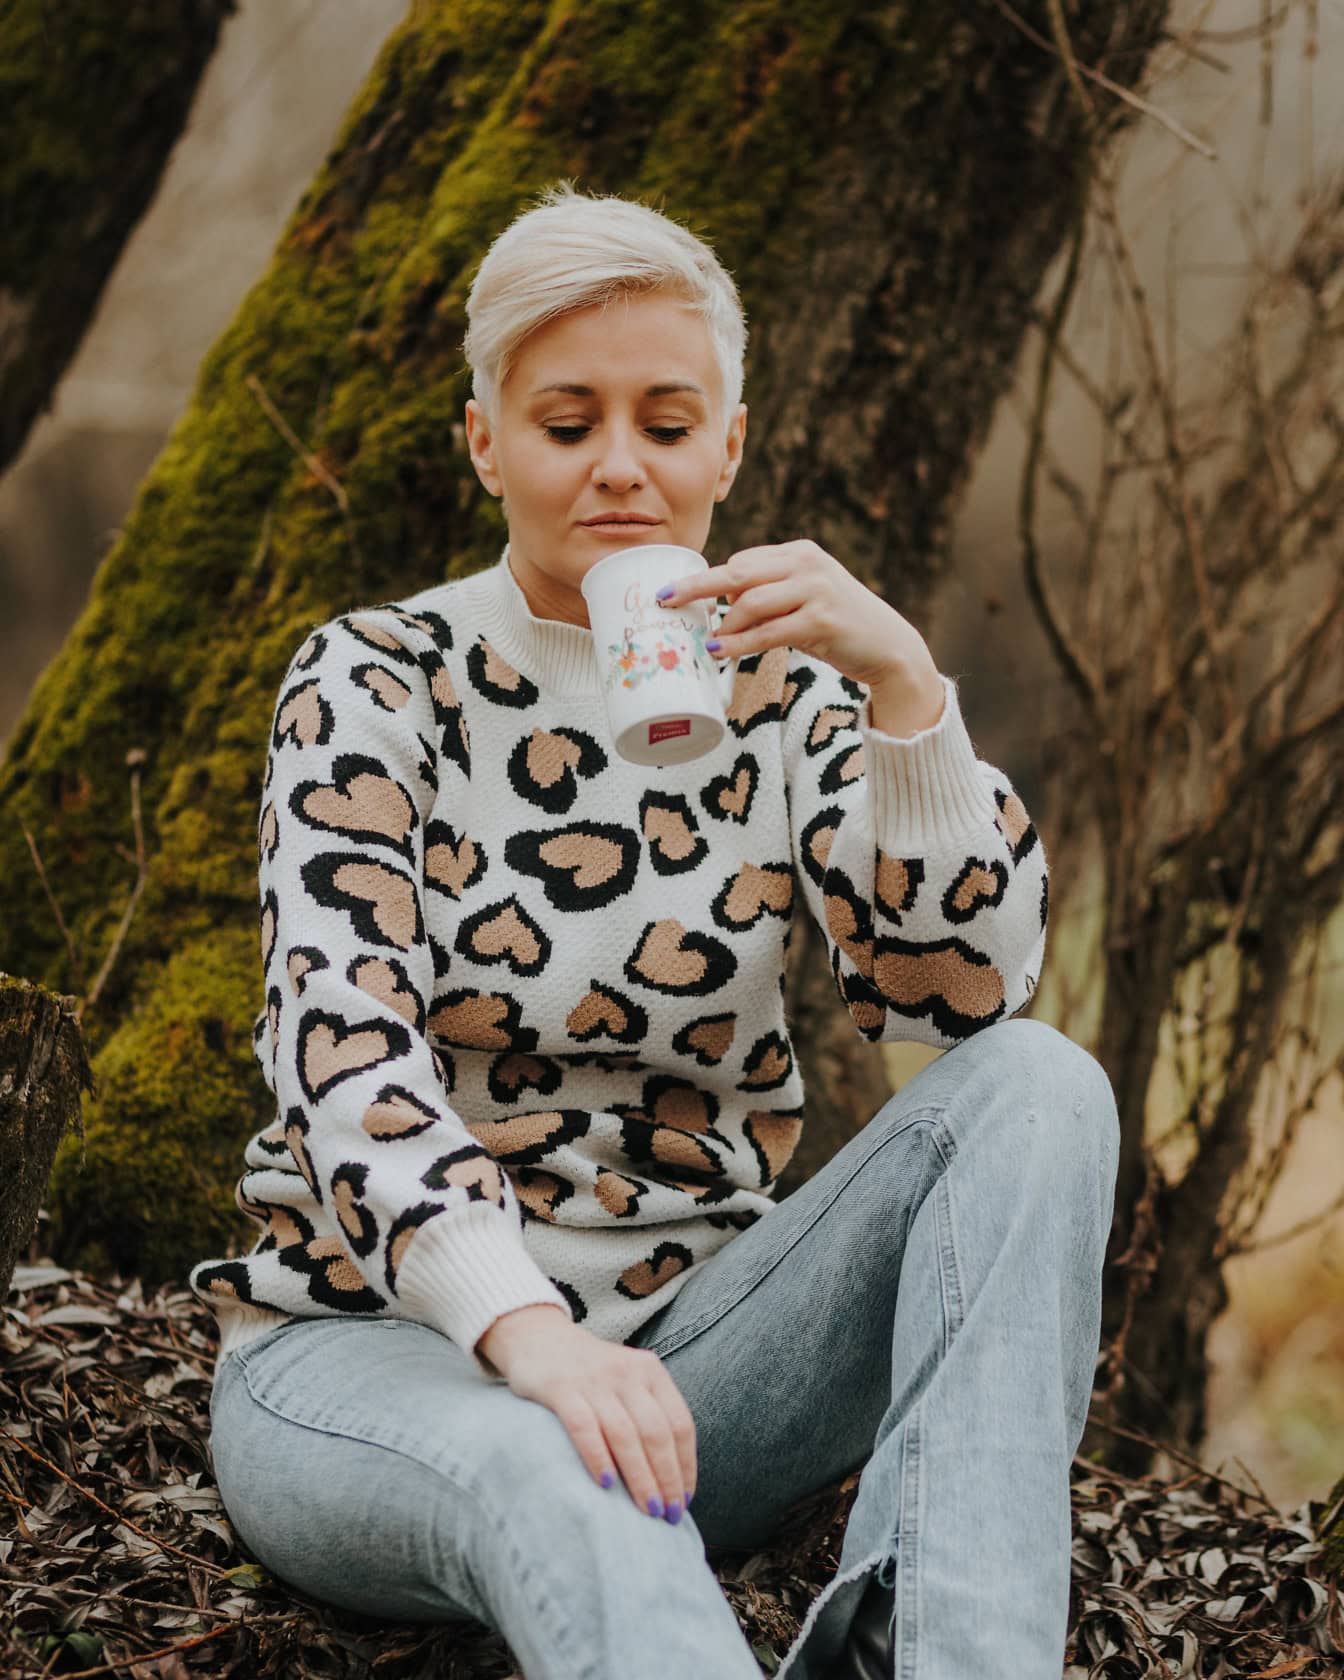 Γυναίκα με κοντά ξανθά μαλλιά καθισμένη σε κούτσουρο δέντρου με πουλόβερ και λευκασμένο παντελόνι και πίνοντας από μια κούπα